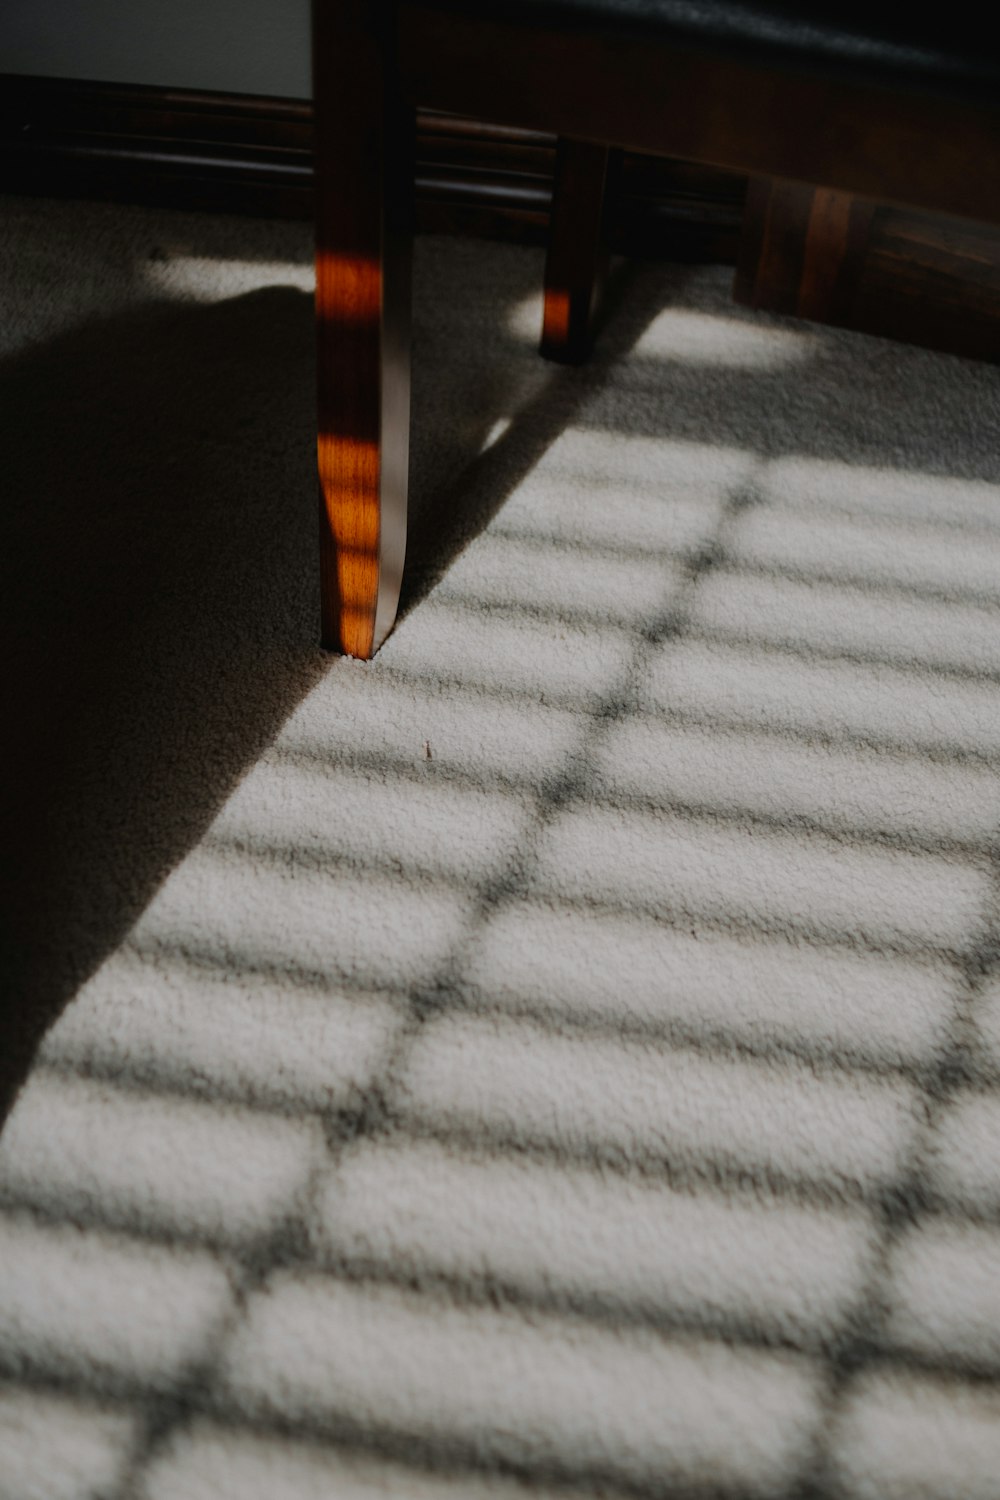 Der Schatten einer Bank auf einem Teppich